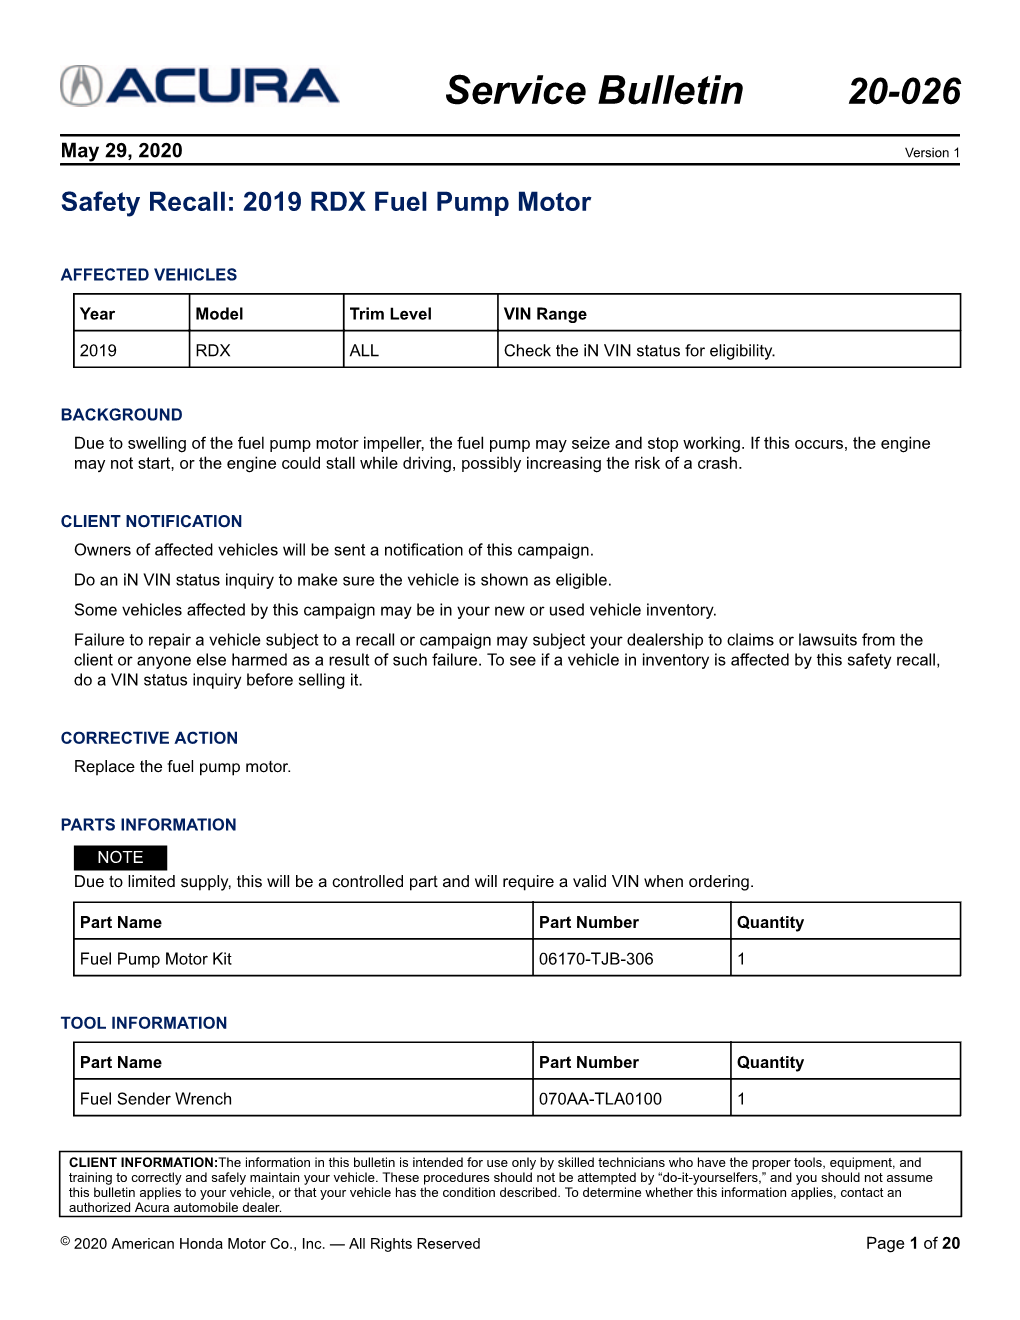 2019 RDX Fuel Pump Motor